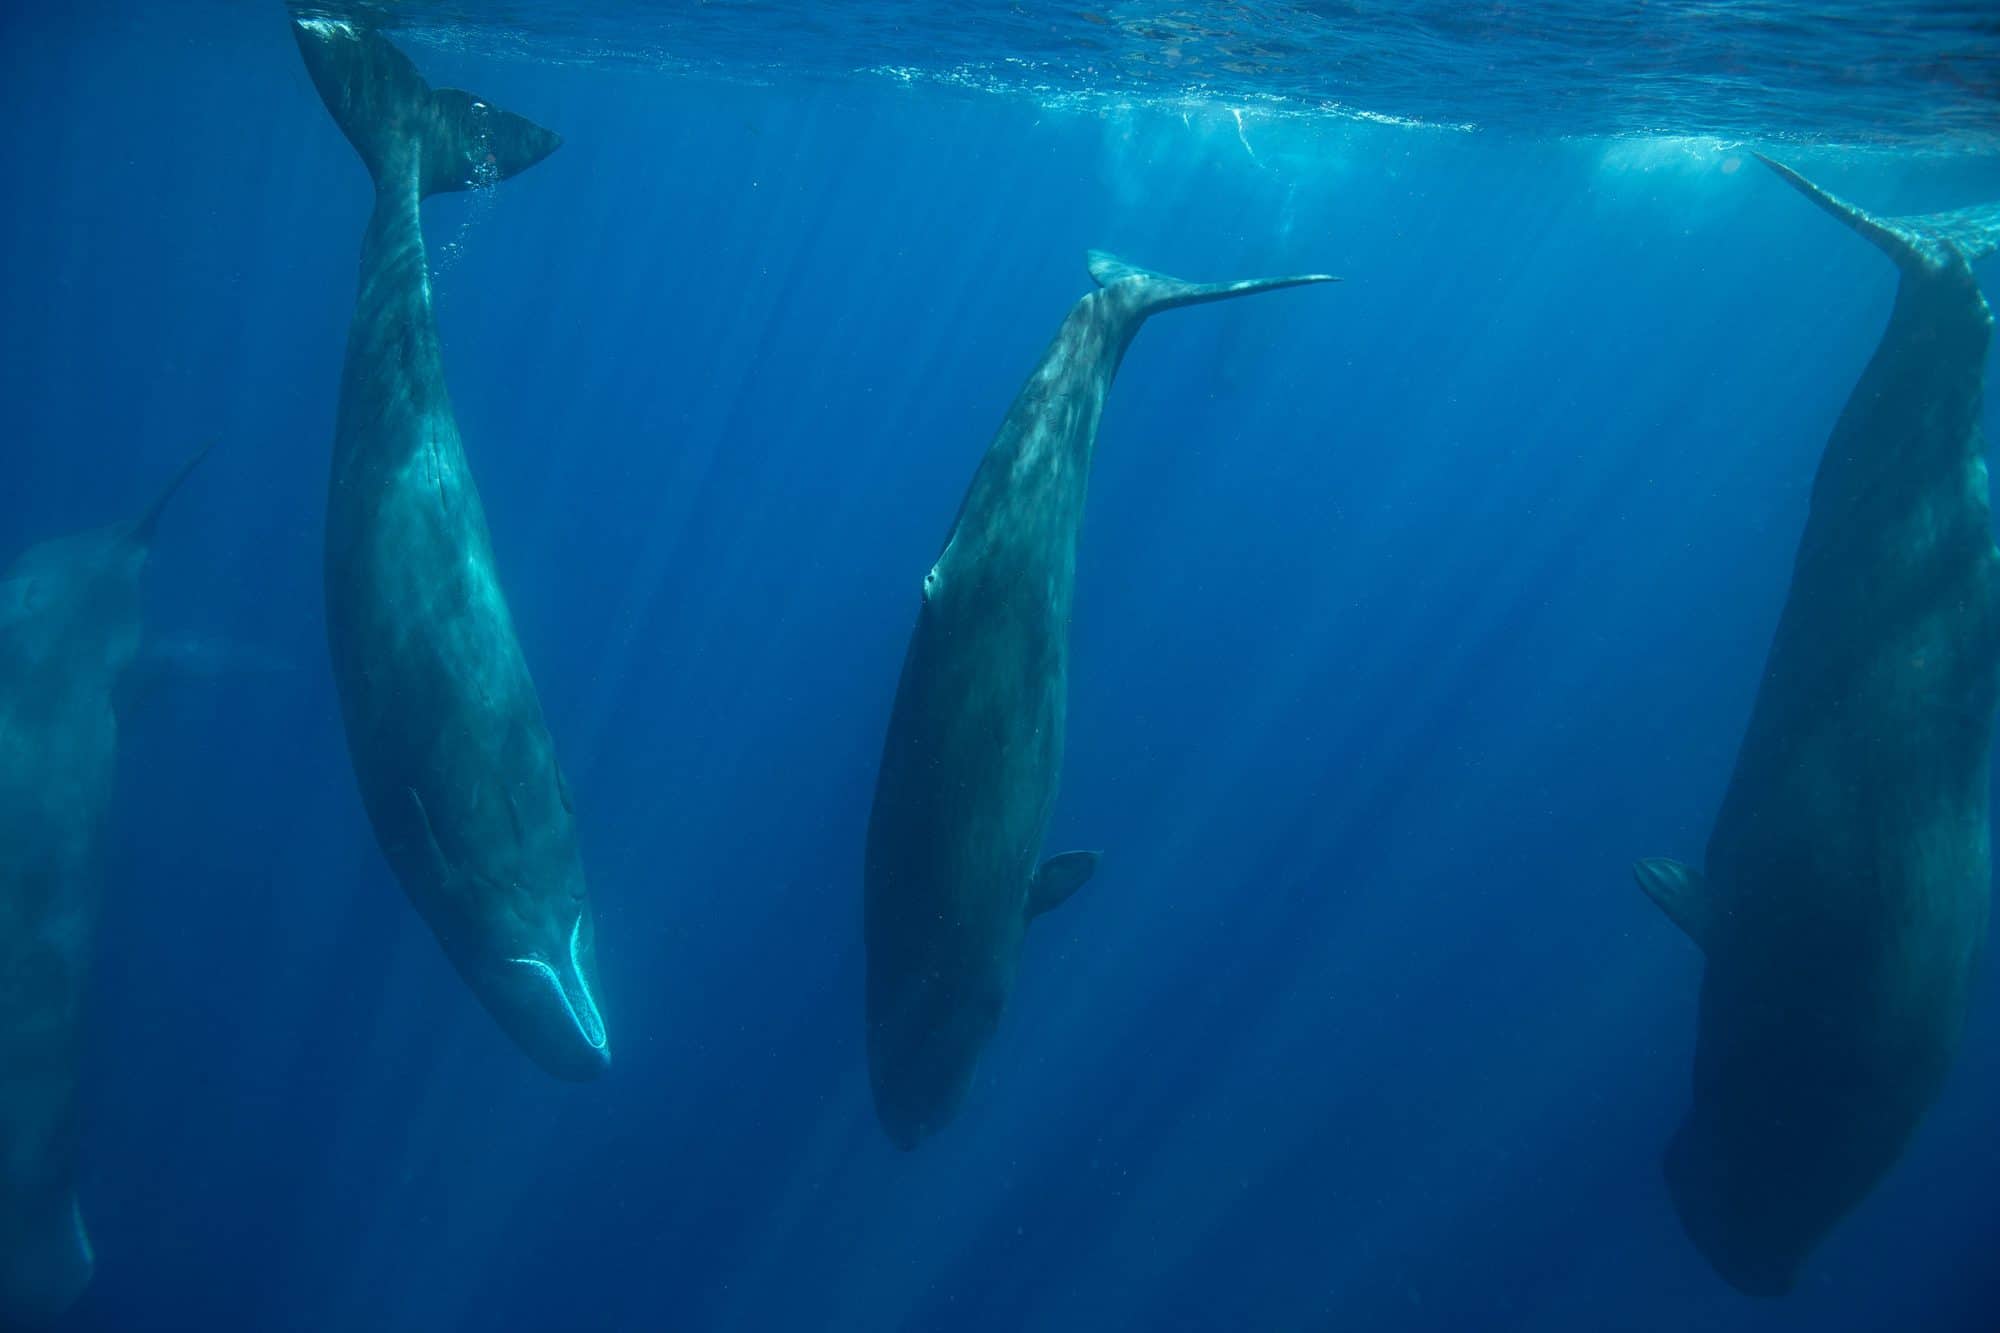 A magical sperm whale encounter